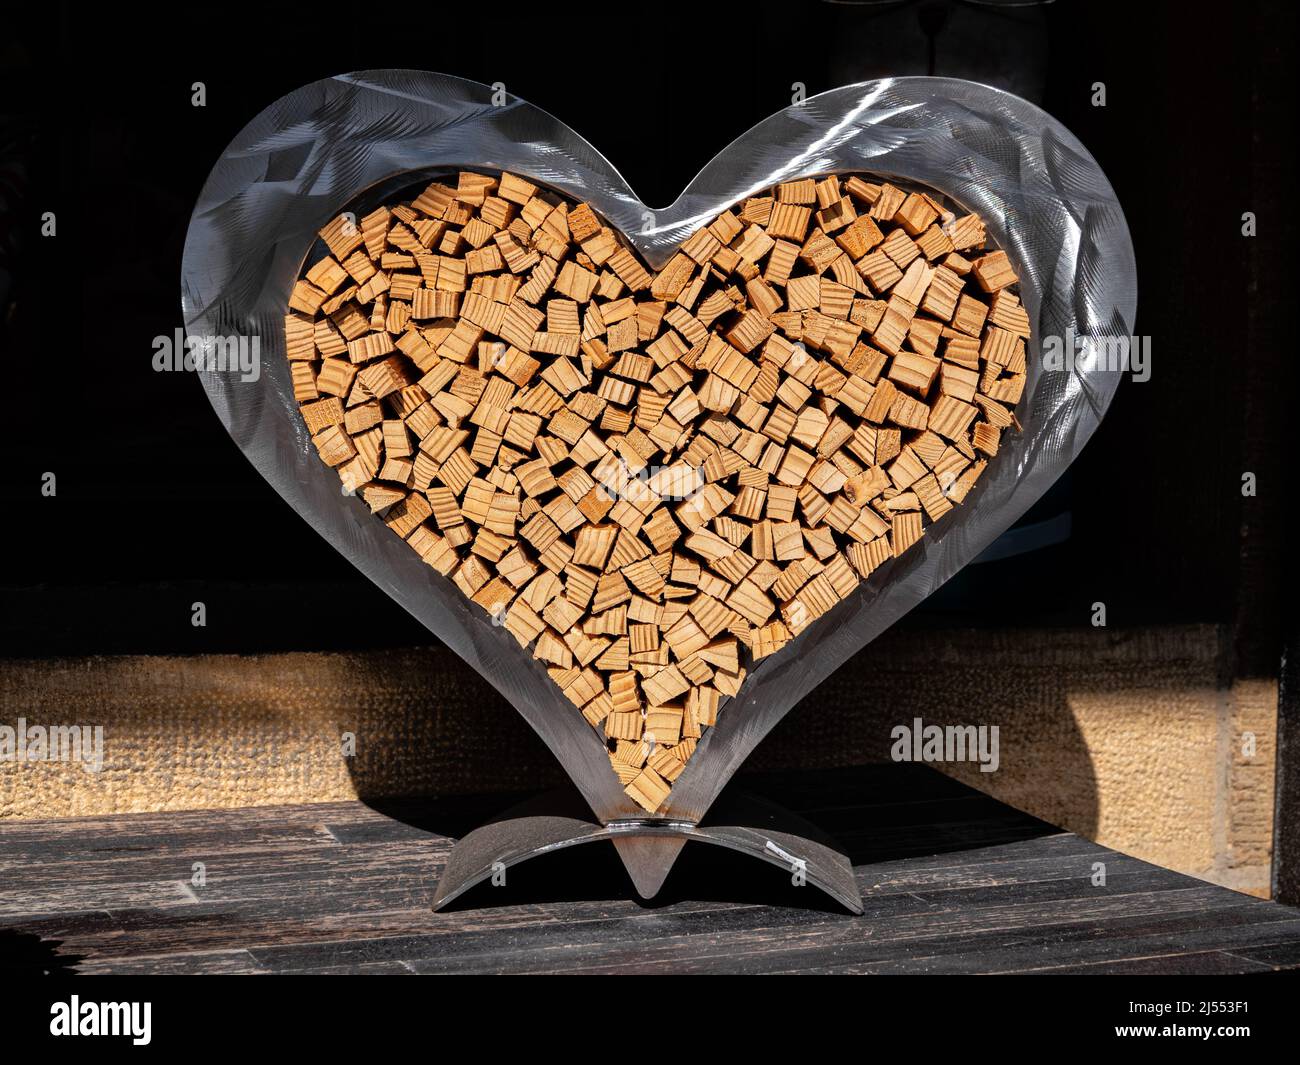 Murten, Suisse - 24 mars 2022 : une présentation artistique en bois dans un cadre qui a l'image d'un coeur Banque D'Images